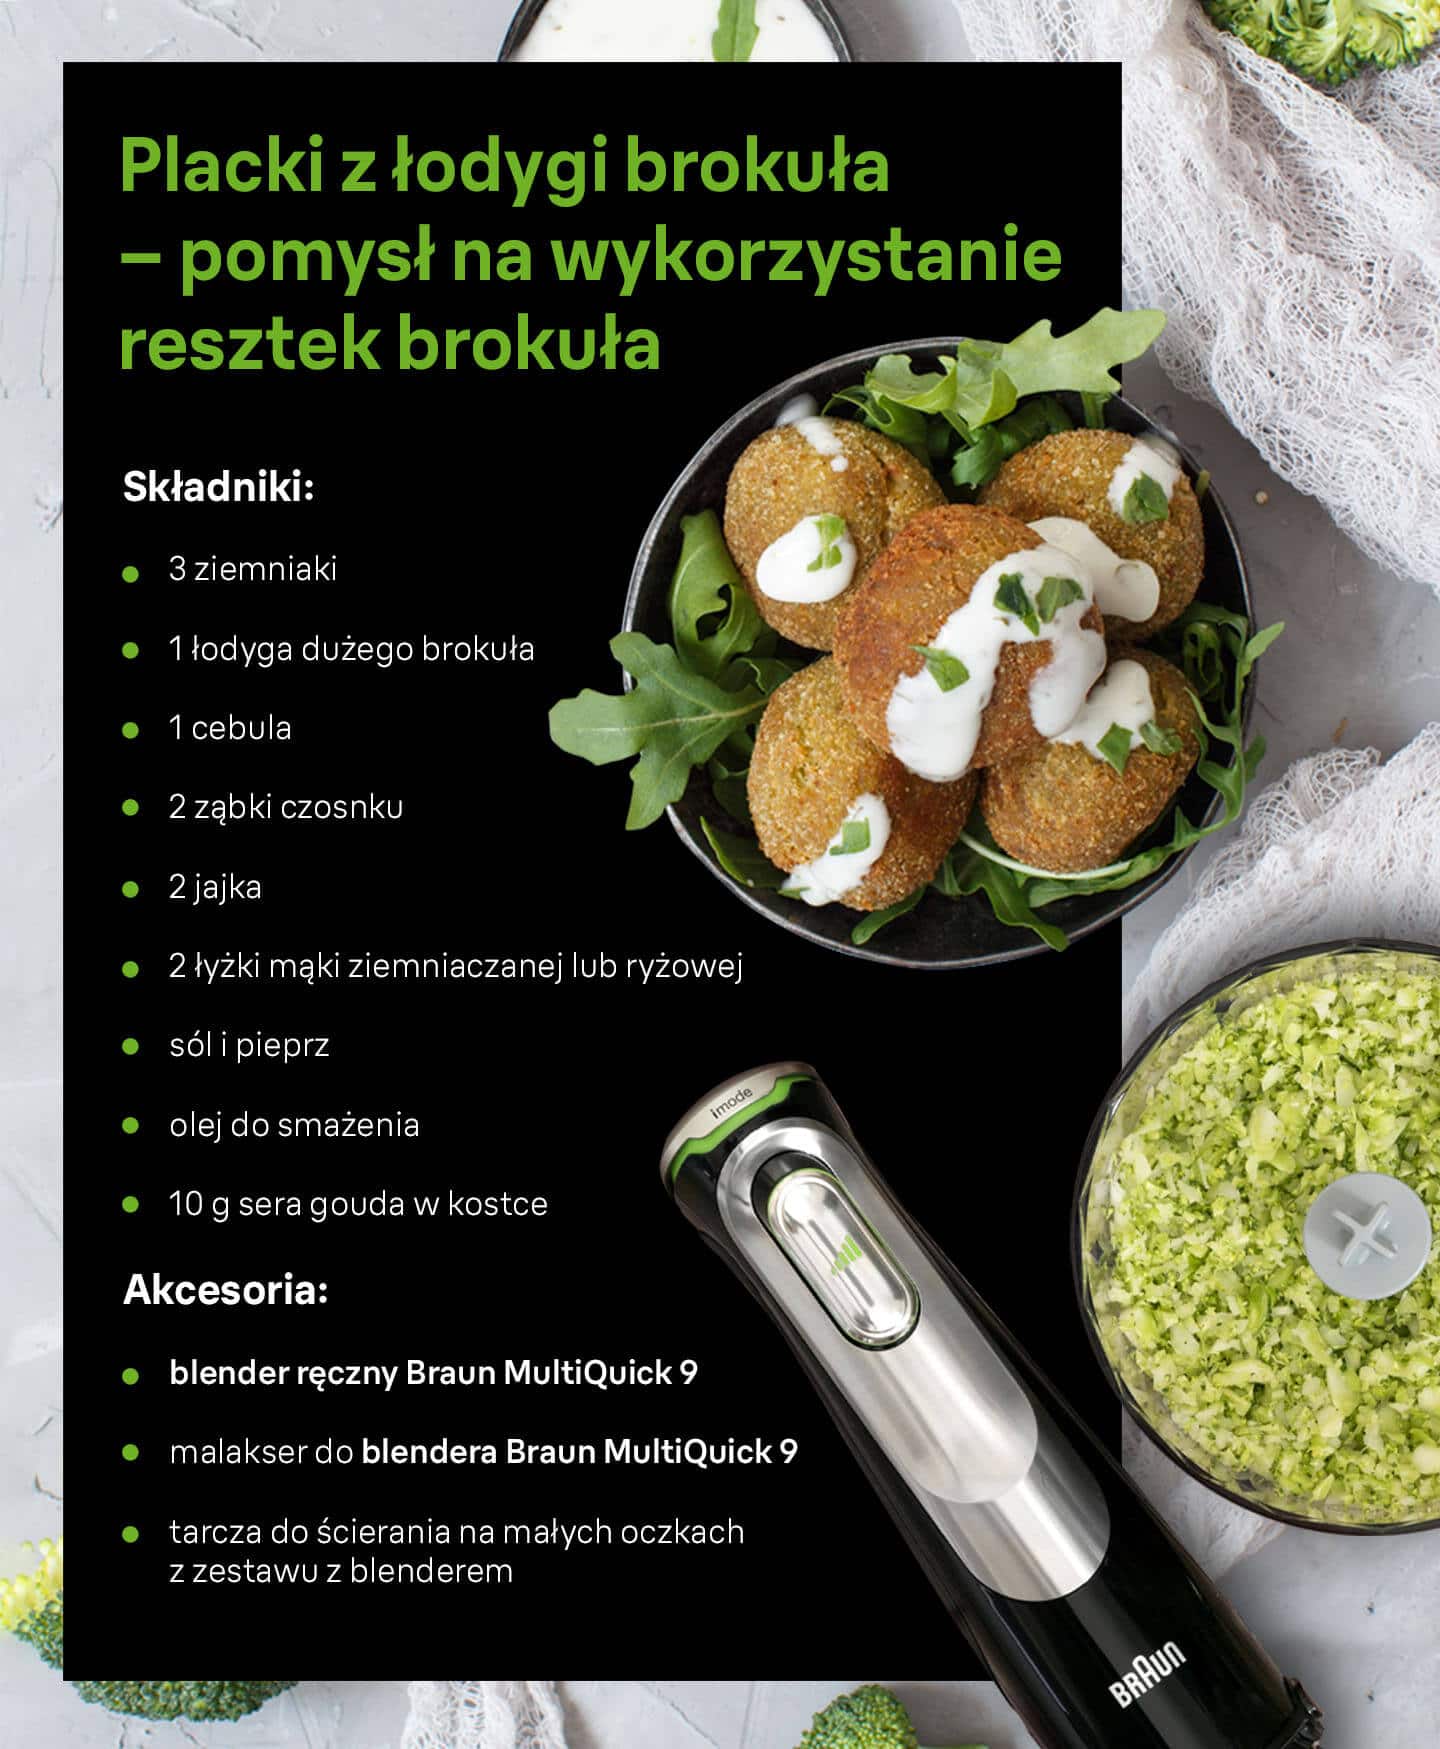 Placki z łodygi brokuła – pomysł na wykorzystanie resztek brokuła - składniki i niezbędne akcesoria - infografika